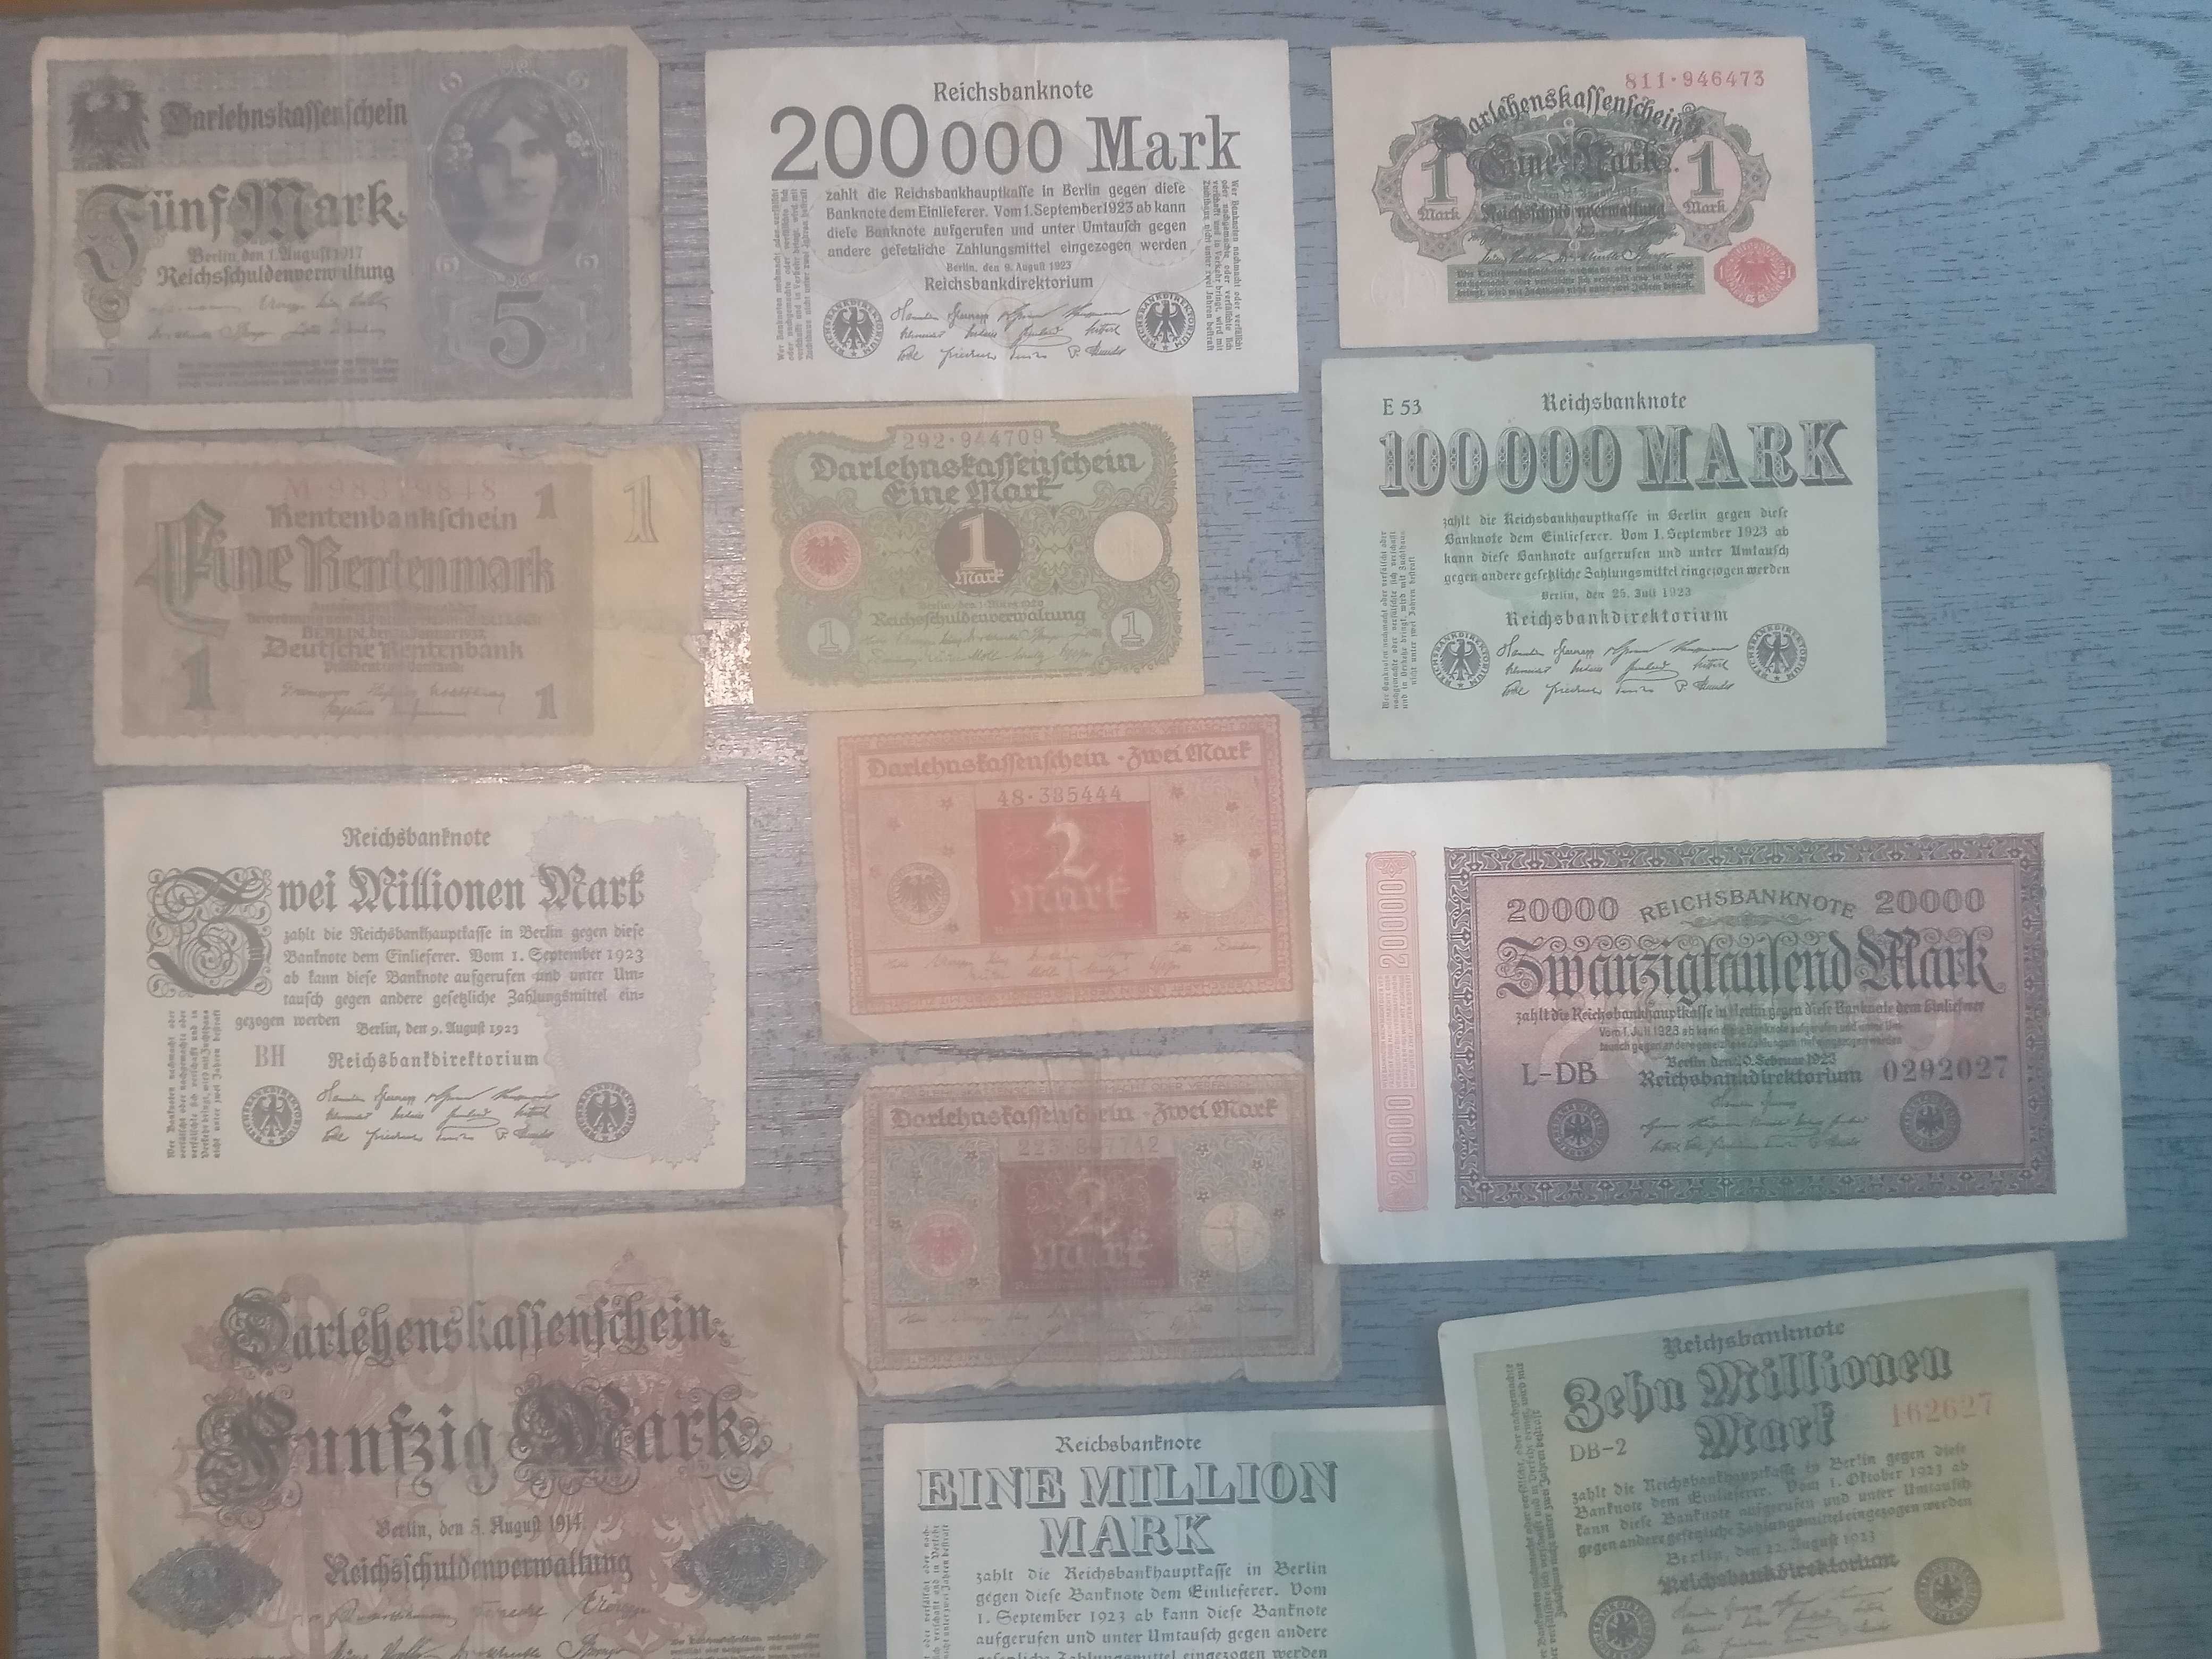 Banknoty marki niemieckie Republika weimarska